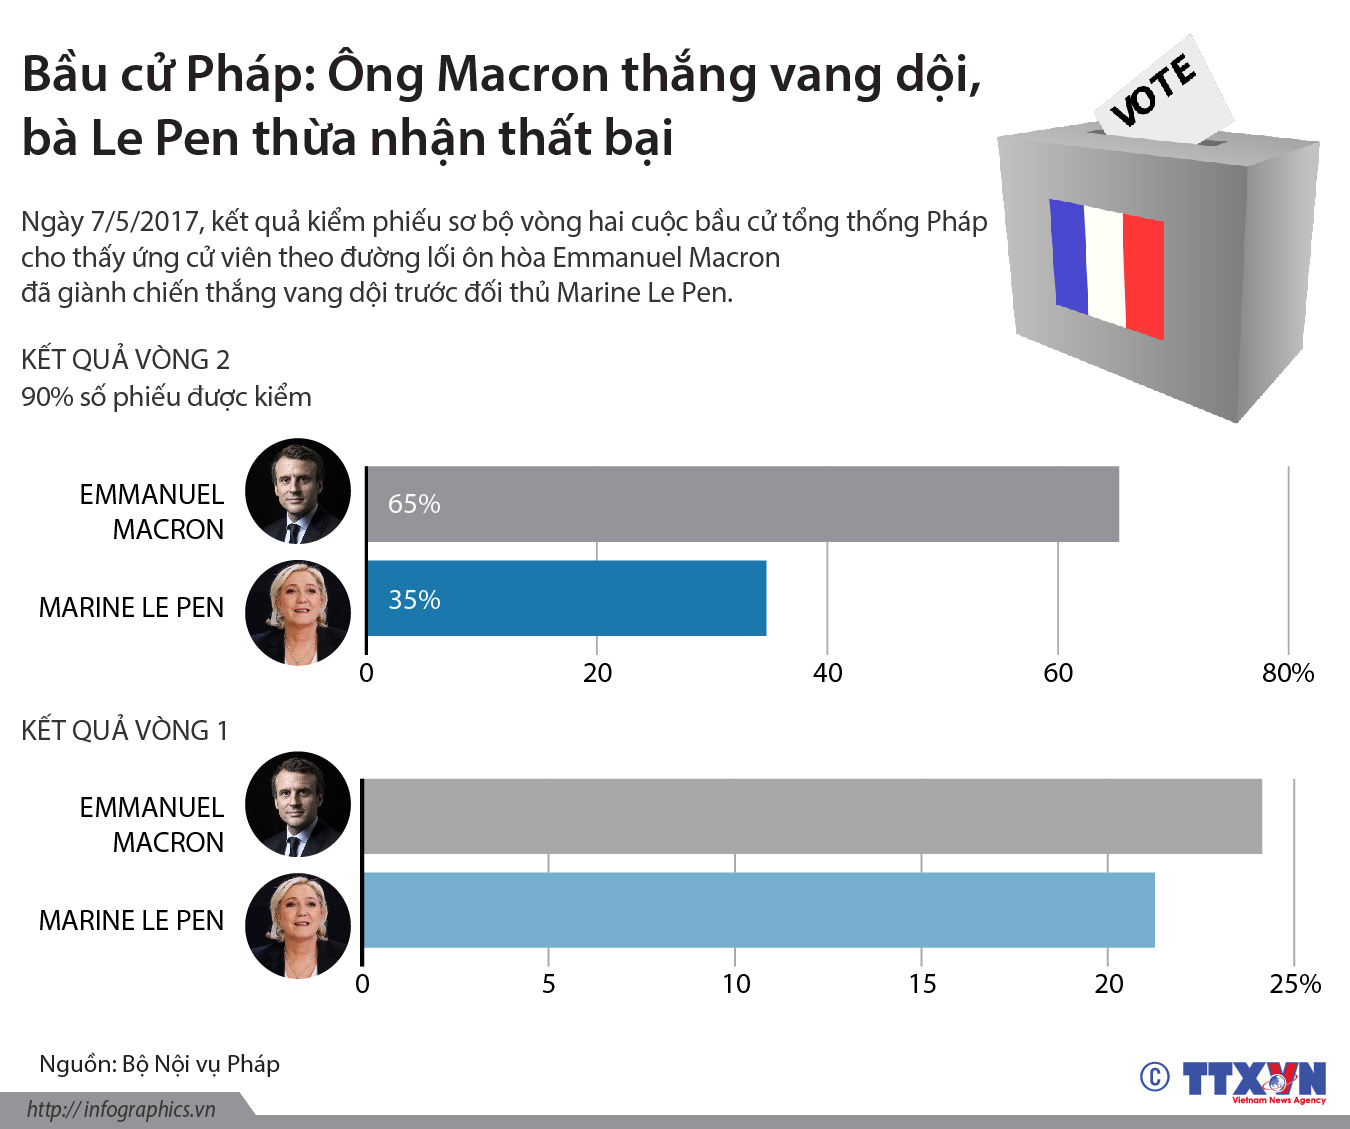 Ông Macron thắng vang dội, bà Le Pen thừa nhận thất bại